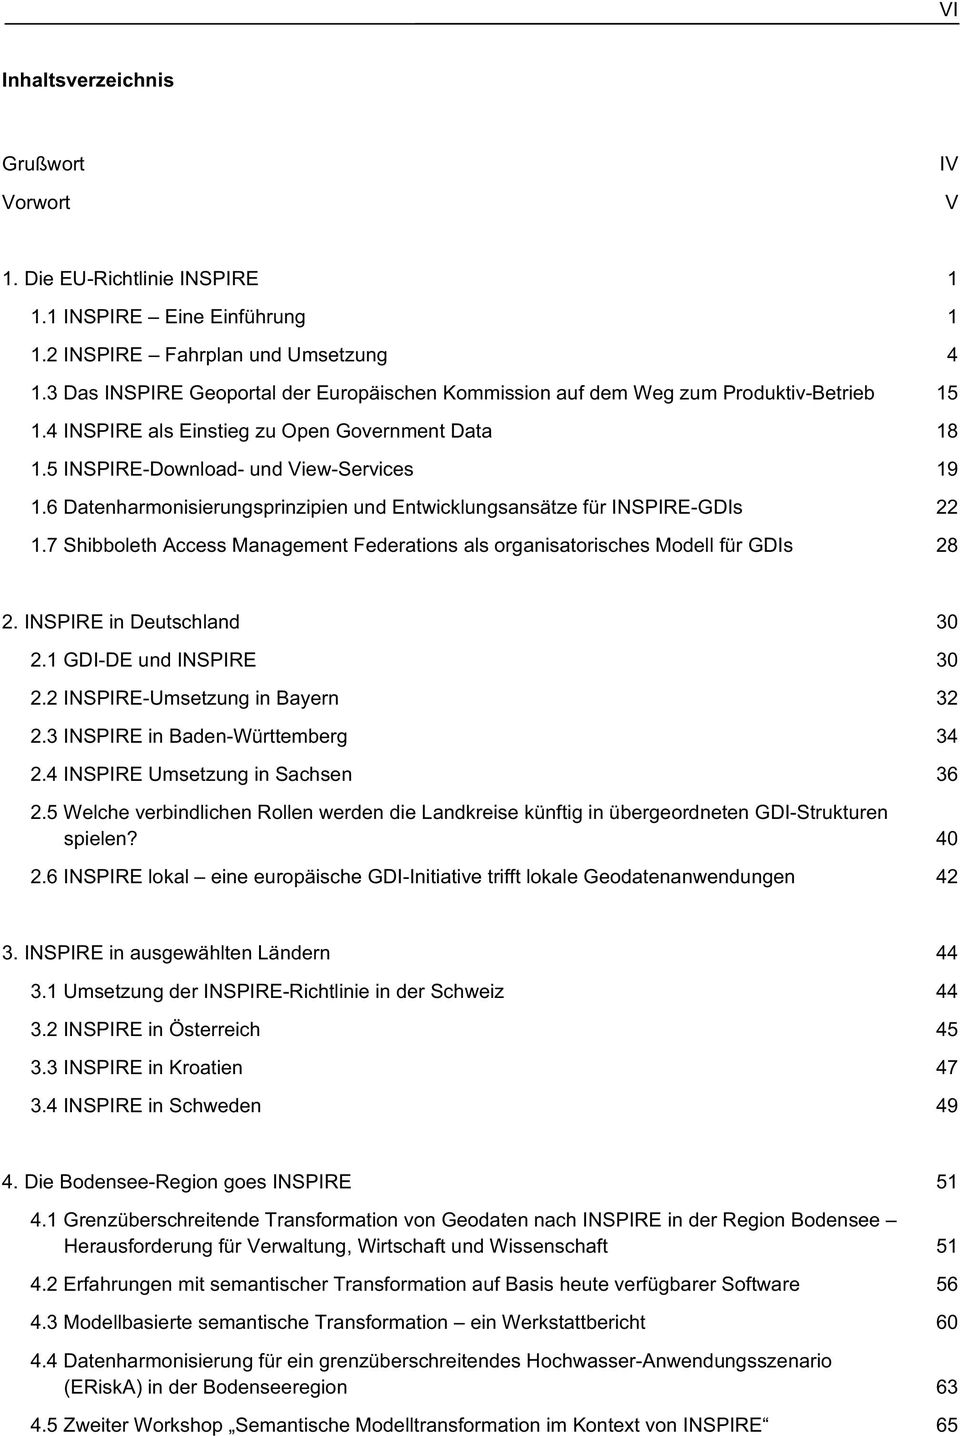 6 Datenharmonisierungsprinzipien und Entwicklungsansätze für INSPIRE-GDIs 22 1.7 Shibboleth Access Management Federations als organisatorisches Modell für GDIs 28 2. INSPIRE in Deutschland 30 2.